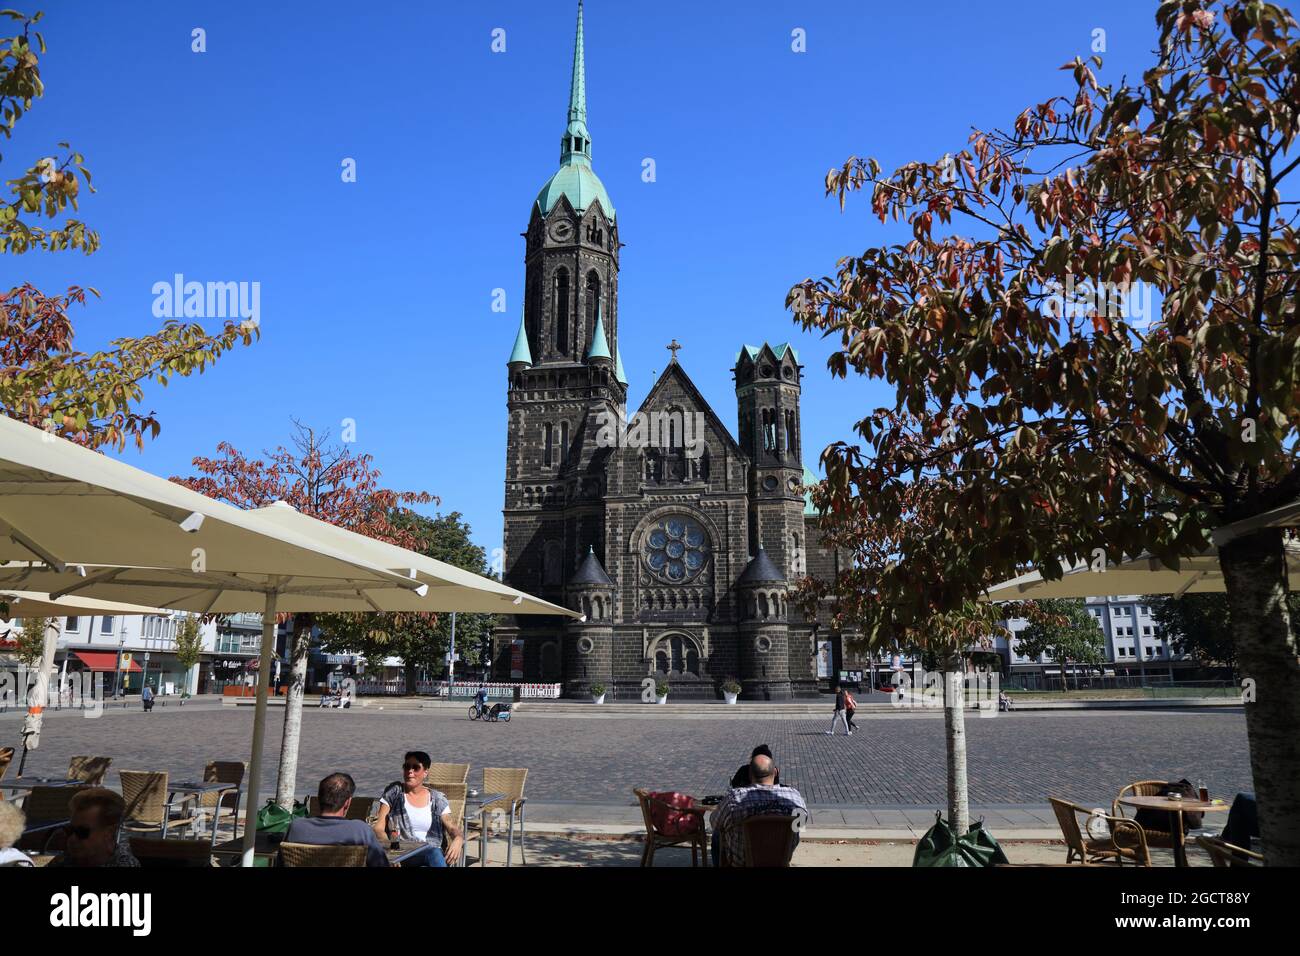 MÖNCHENGLADBACH, DEUTSCHLAND - 18. SEPTEMBER 2020: Menschen besuchen Rheydt Bezirk Mönchengladbach, eine Großstadt in Nordrhein-Westfalen Region Deutschland Stockfoto